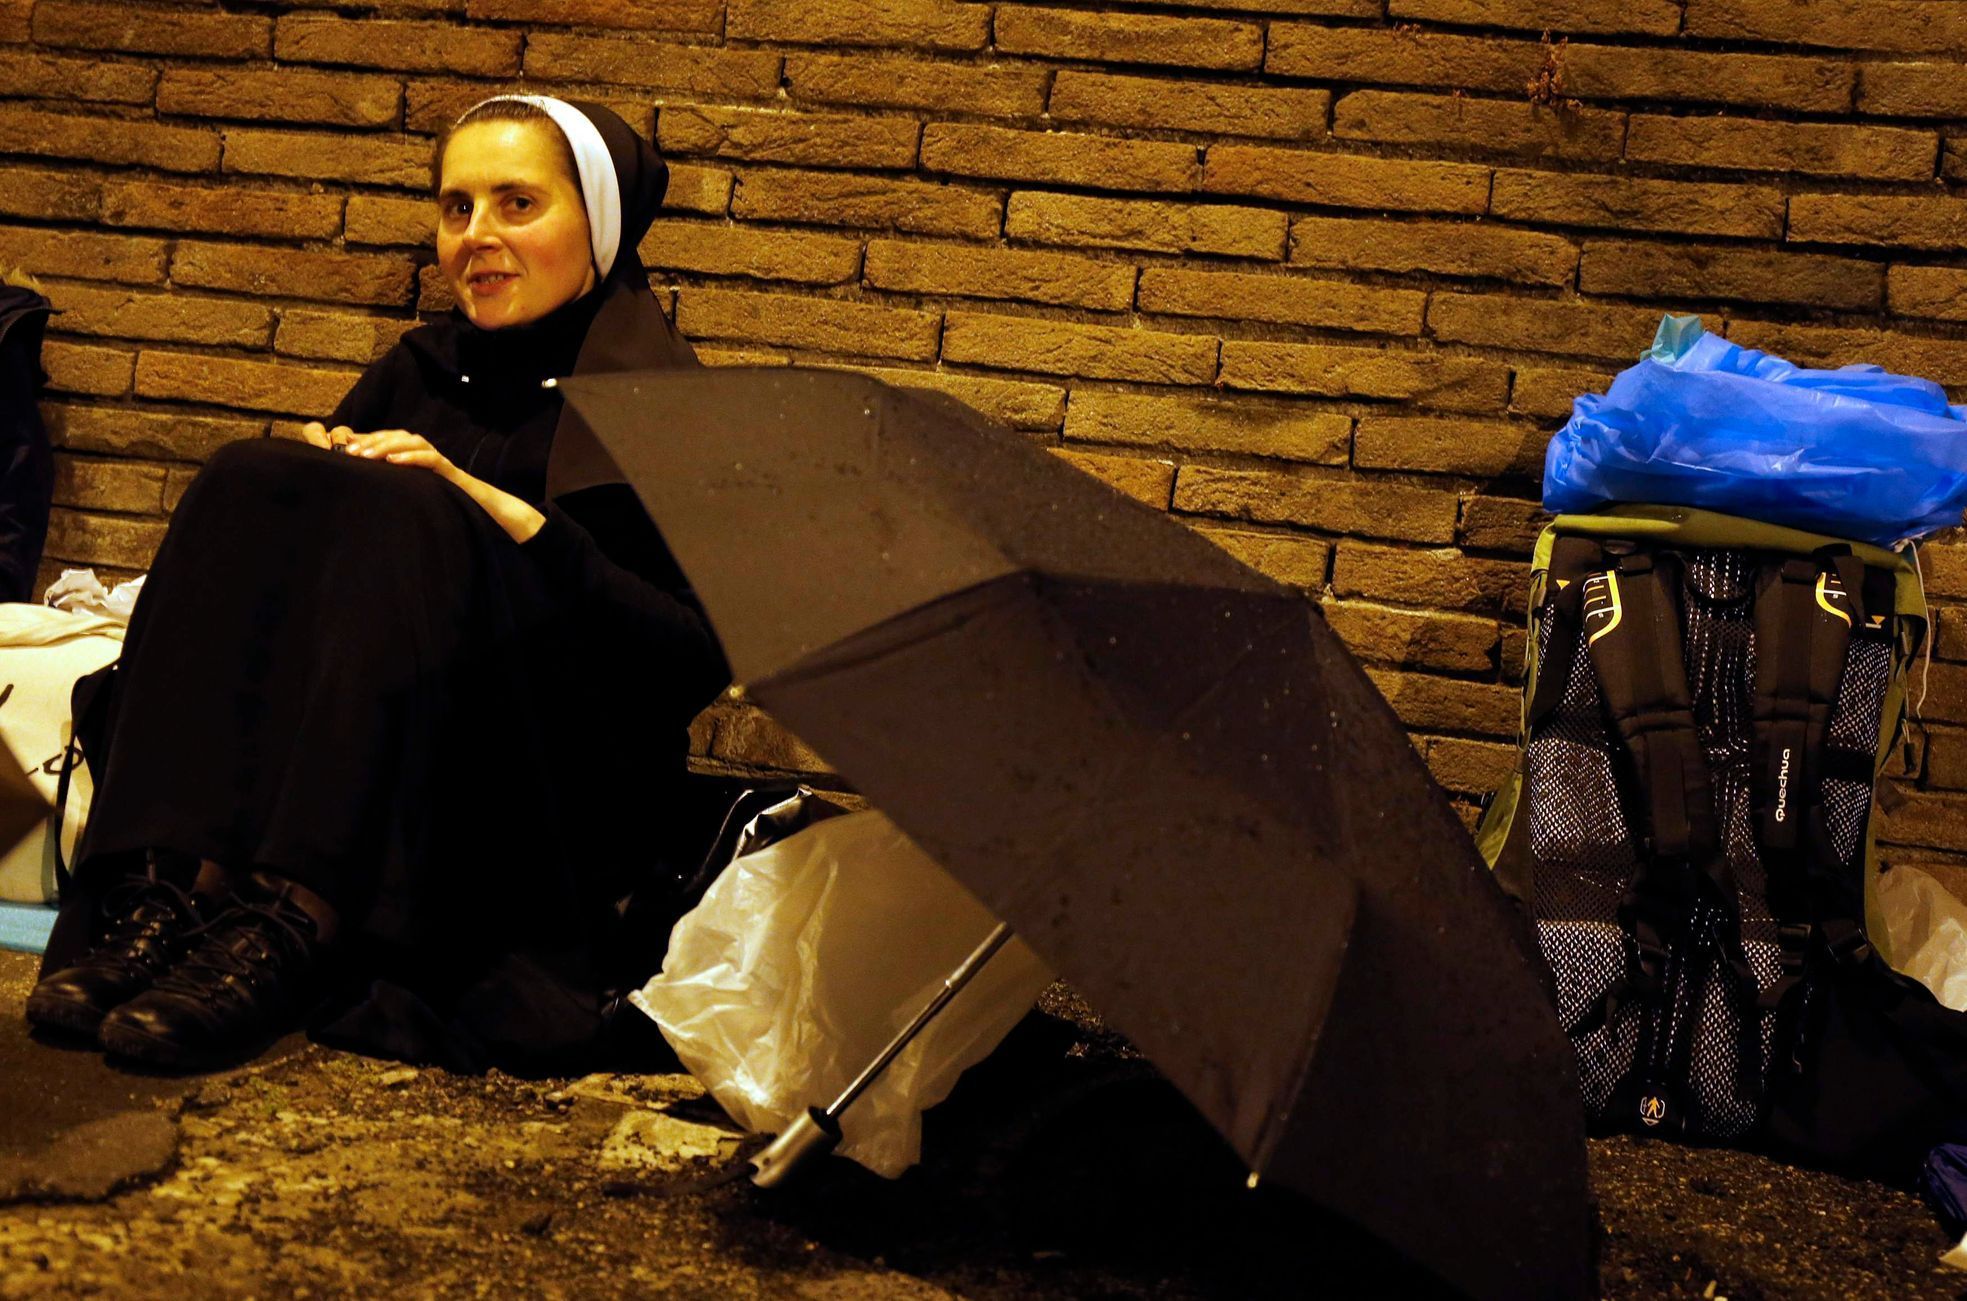 Jeptiška čeká na slavnost ve Vatikánu.